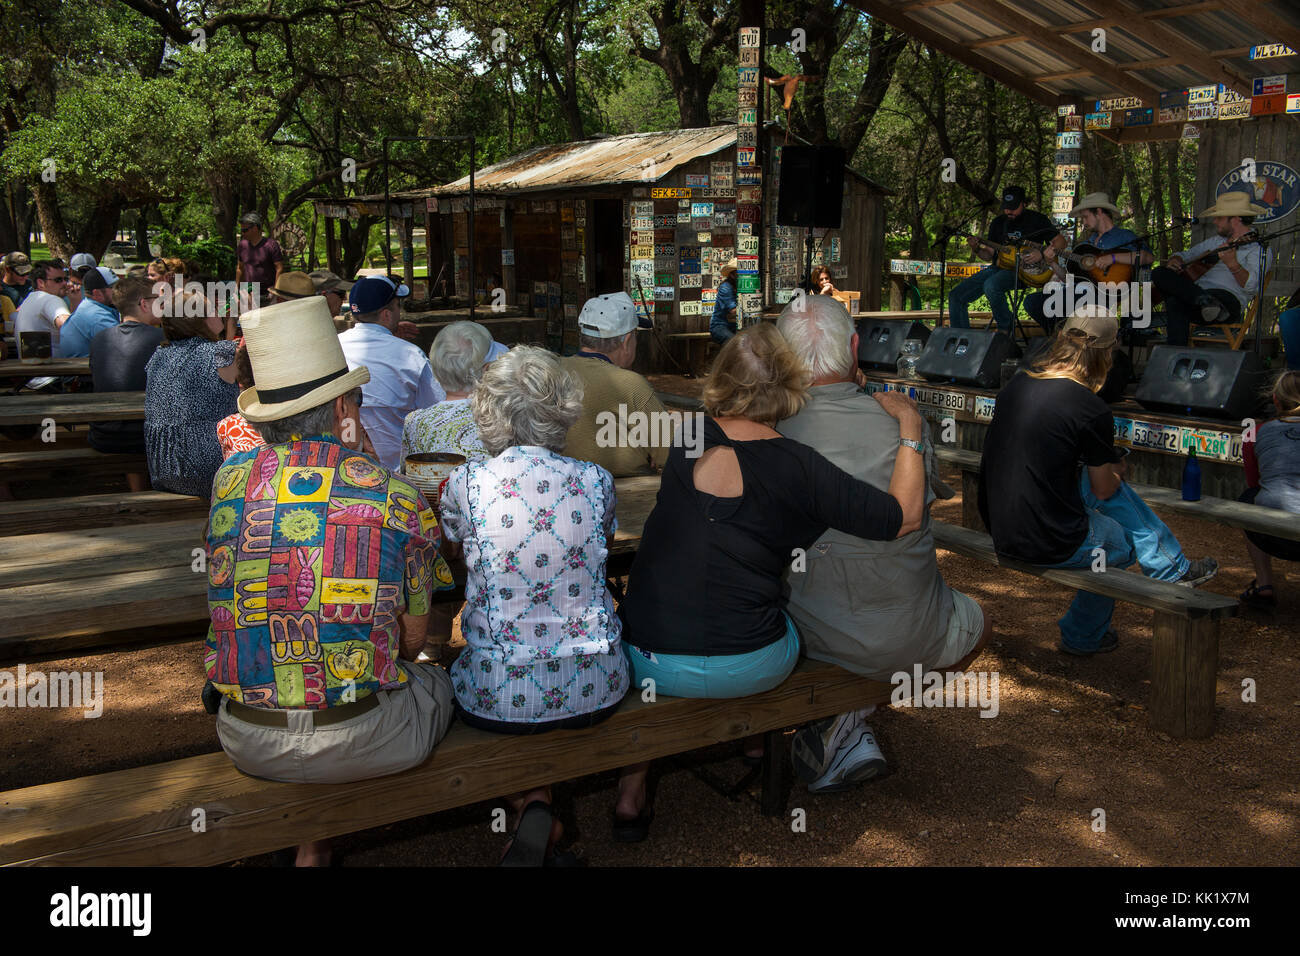 Luckenbach, Texas - 8 juin 2014 : les personnes assistant à un concert de musique country à Luckenbach, Texas, USA. Banque D'Images